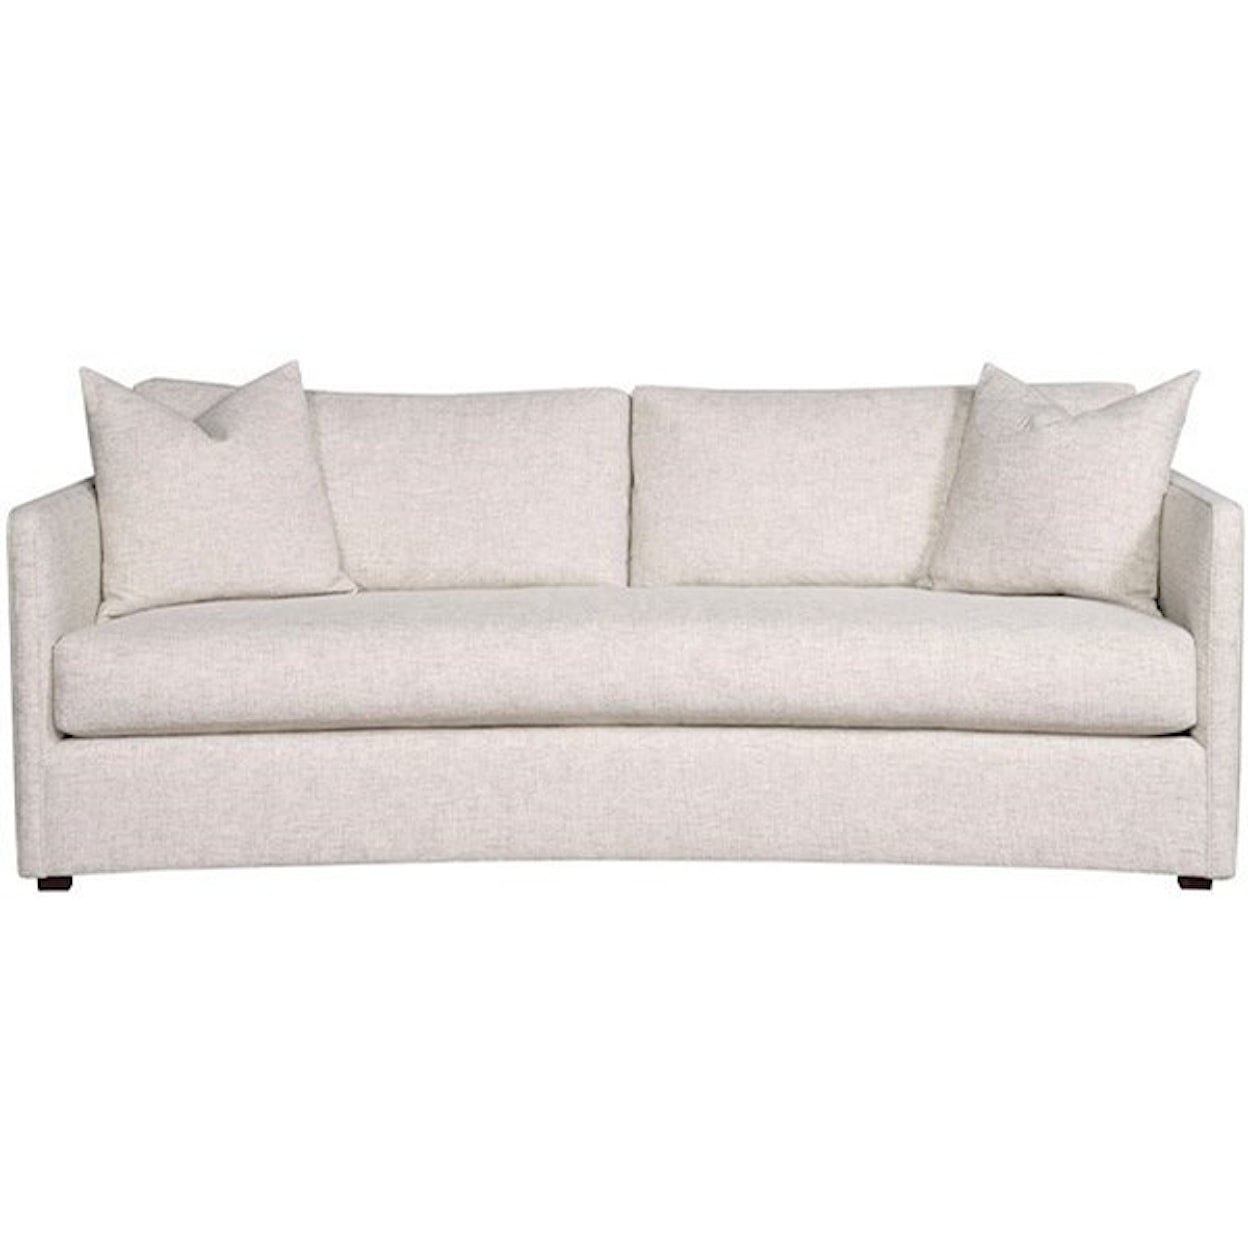 Vanguard Furniture Wynne - Ease Small Scale Sofa